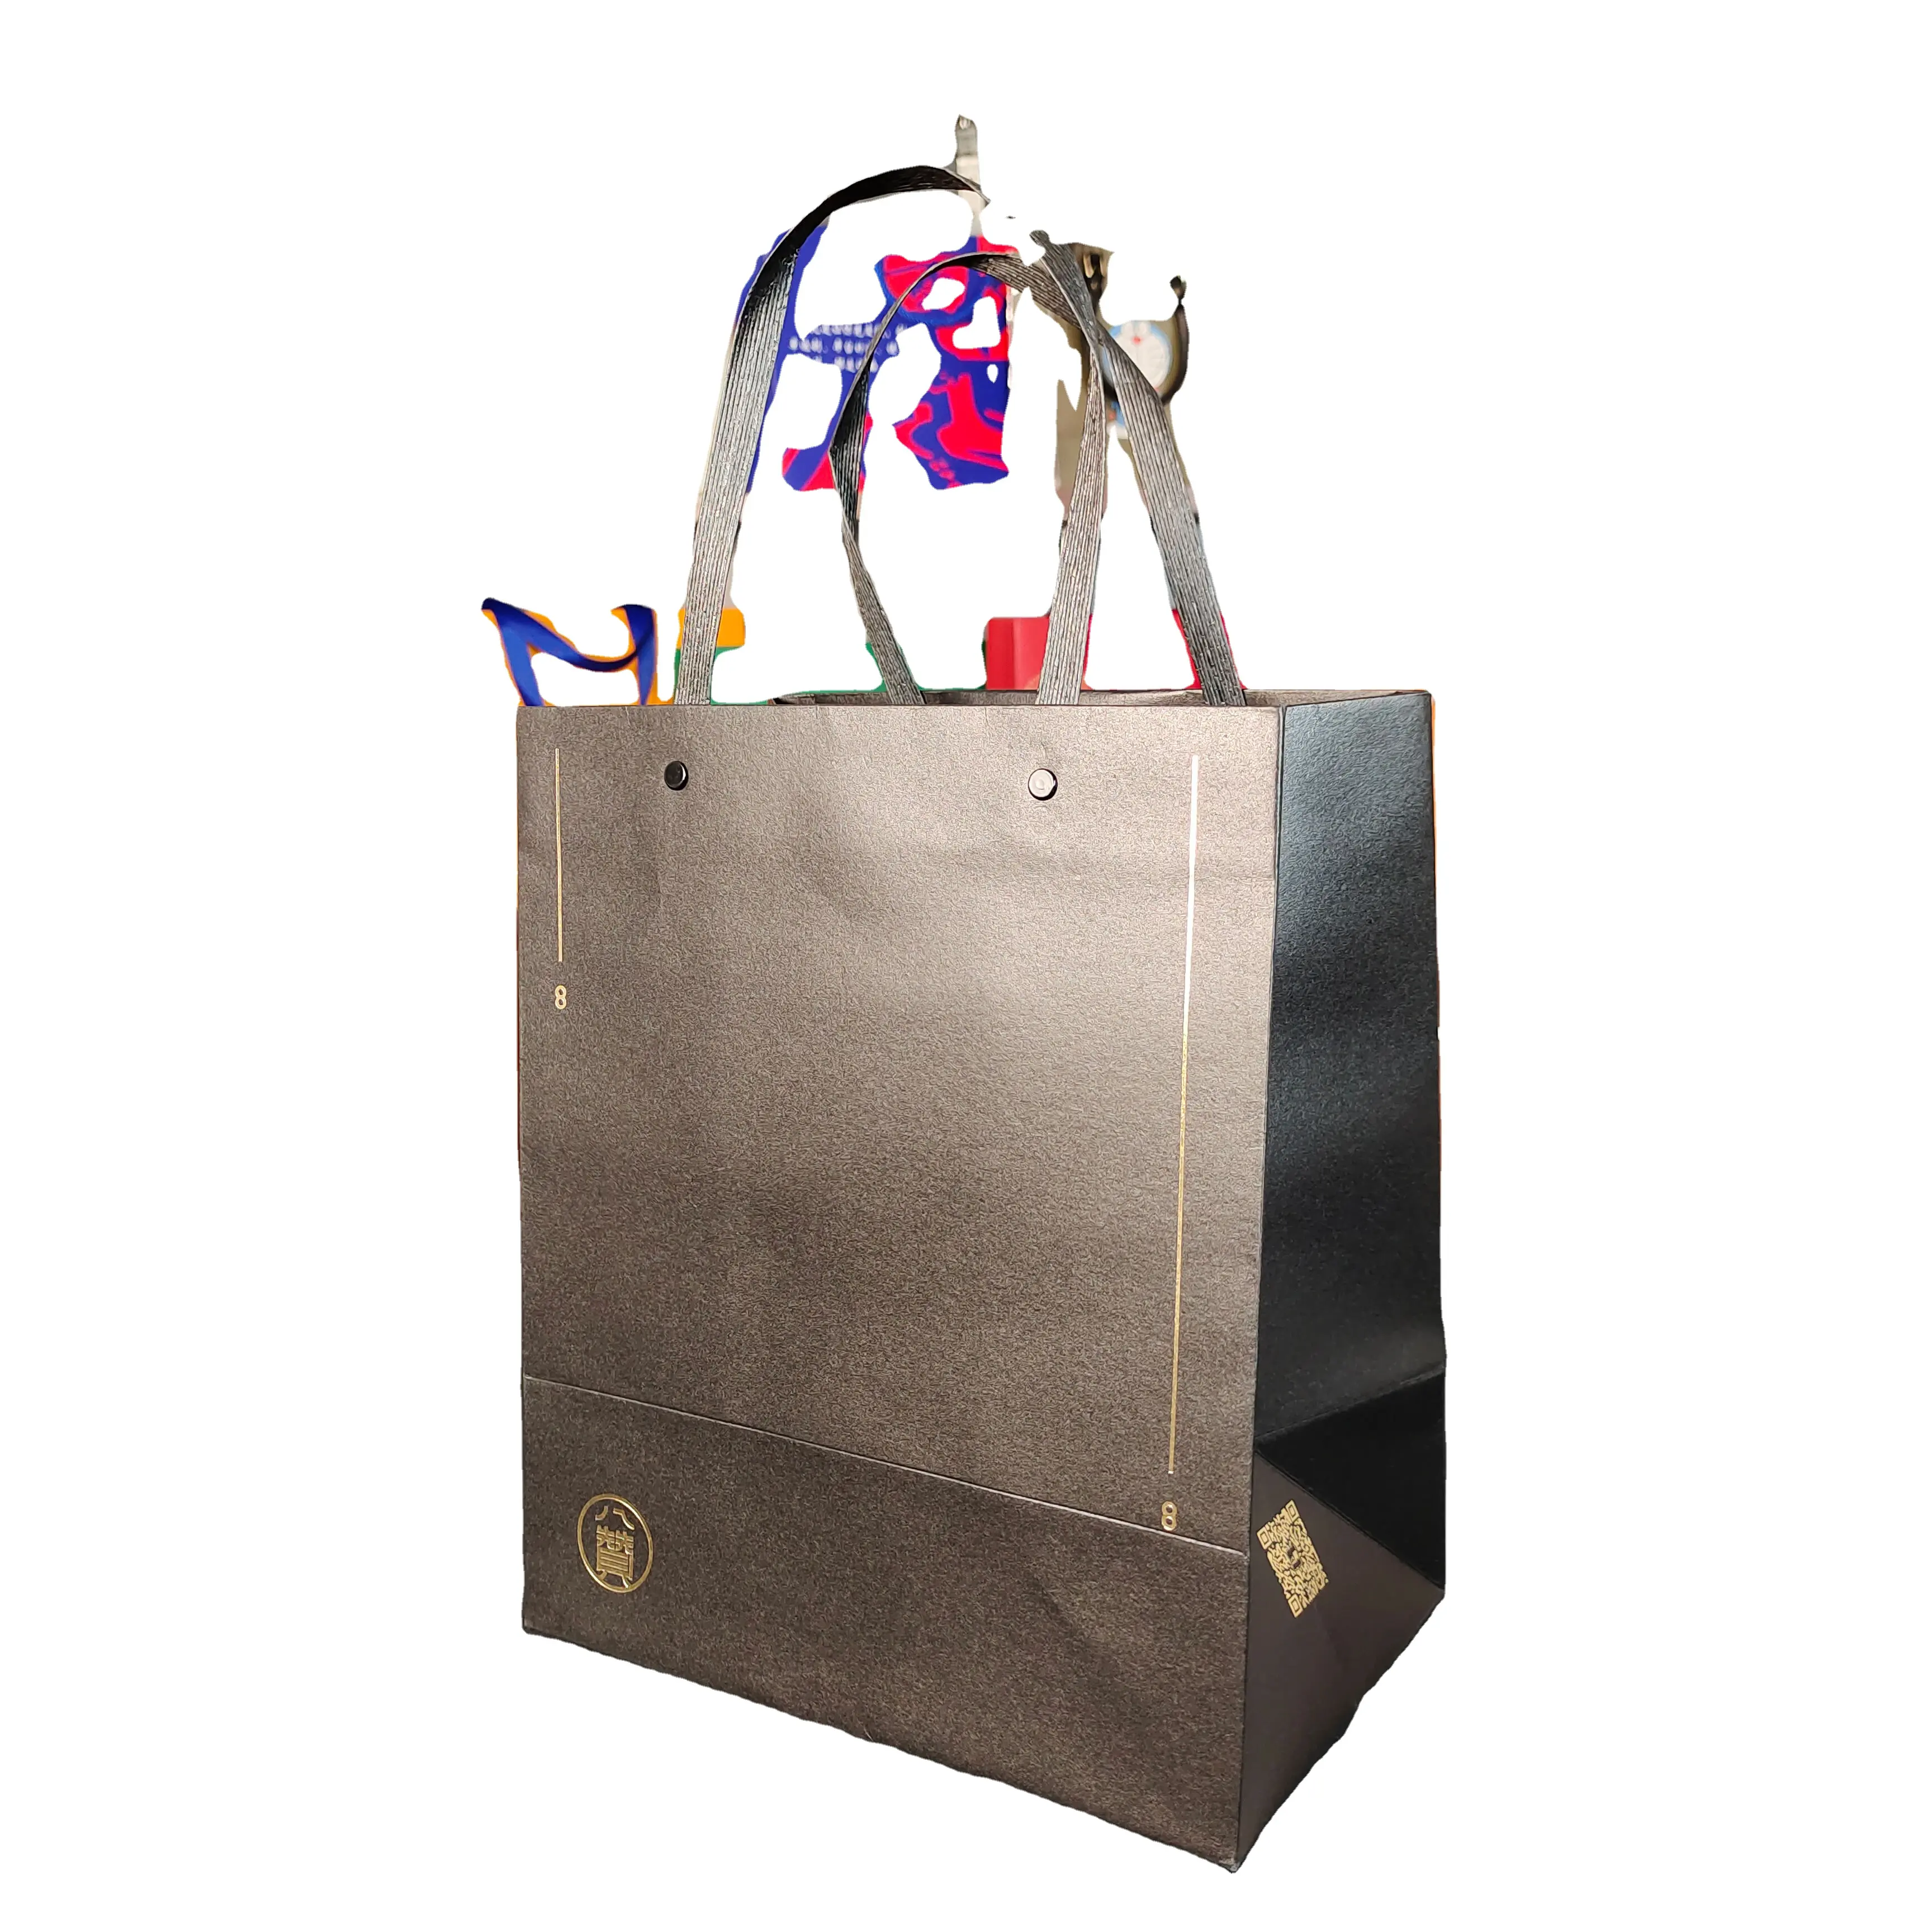 حقيبة ورقية مخصصة حقيبة ملابس حقيبة هدايا للملابس عصرية بطباعة الشعار مع مقبض شريط ورقي للتسوق فاخر